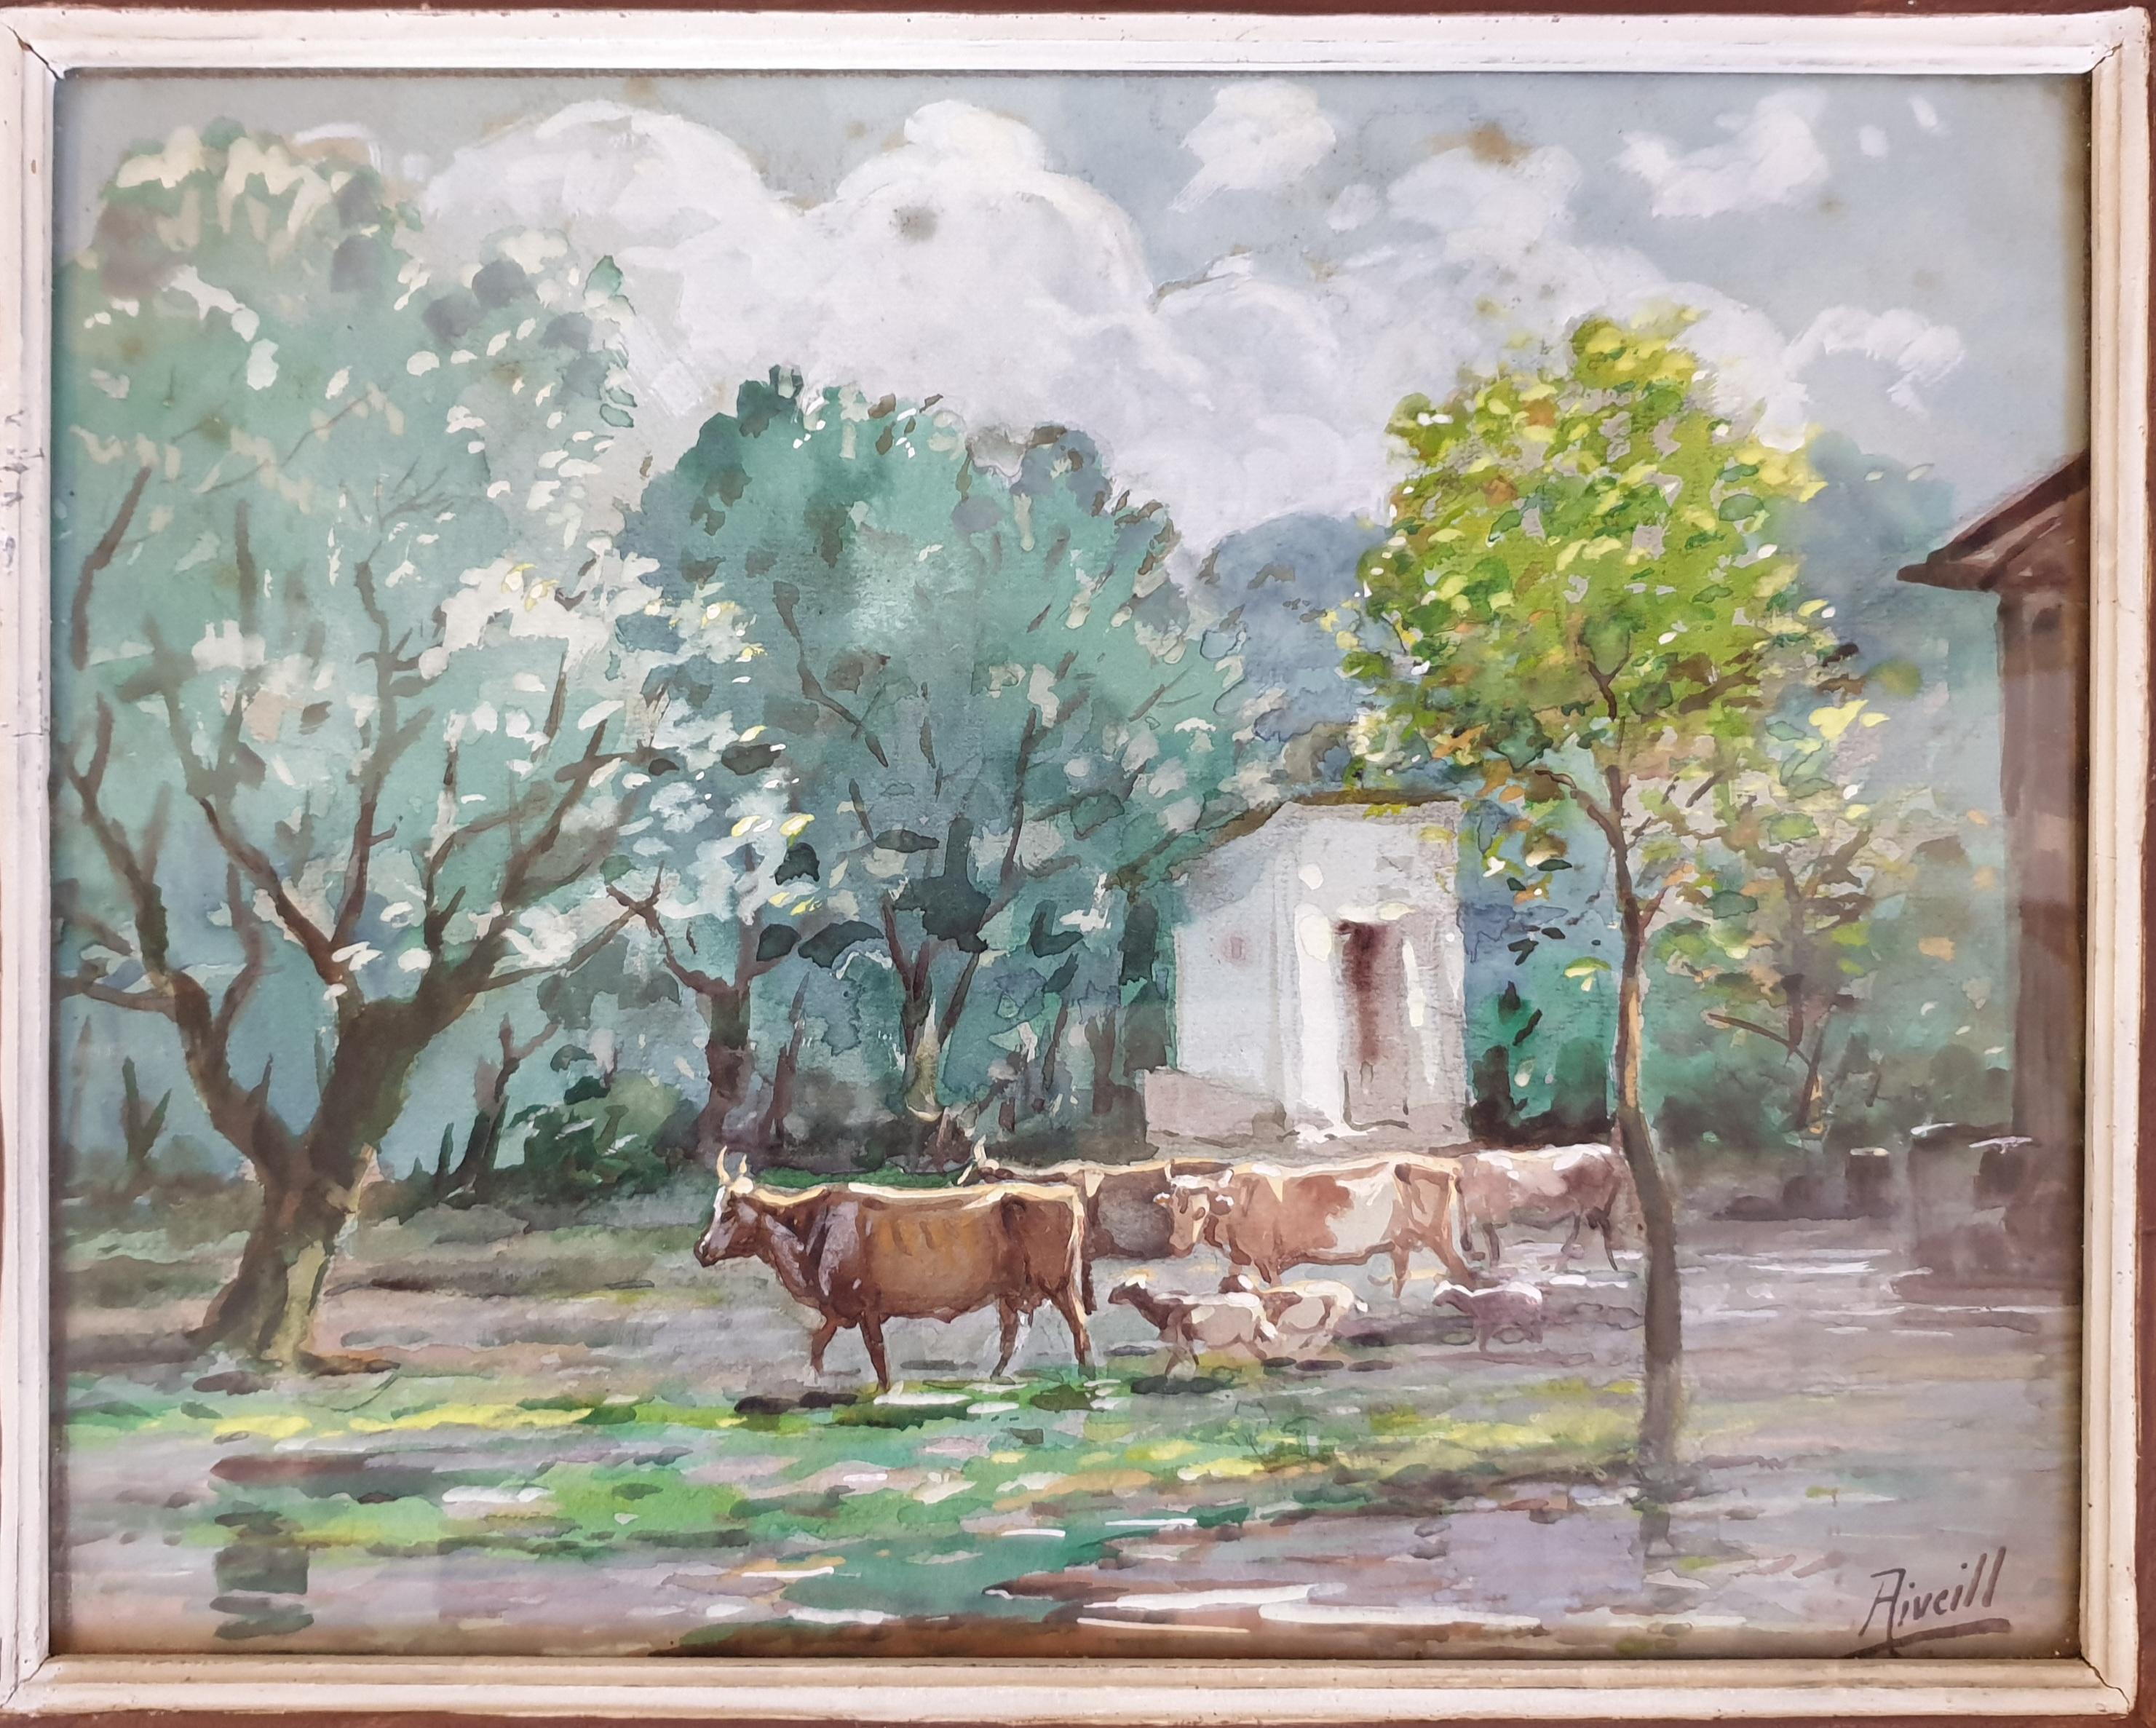 Bouteilles, chèvres et moutons broutant, aquarelle orientaliste. - Art de Aiveill